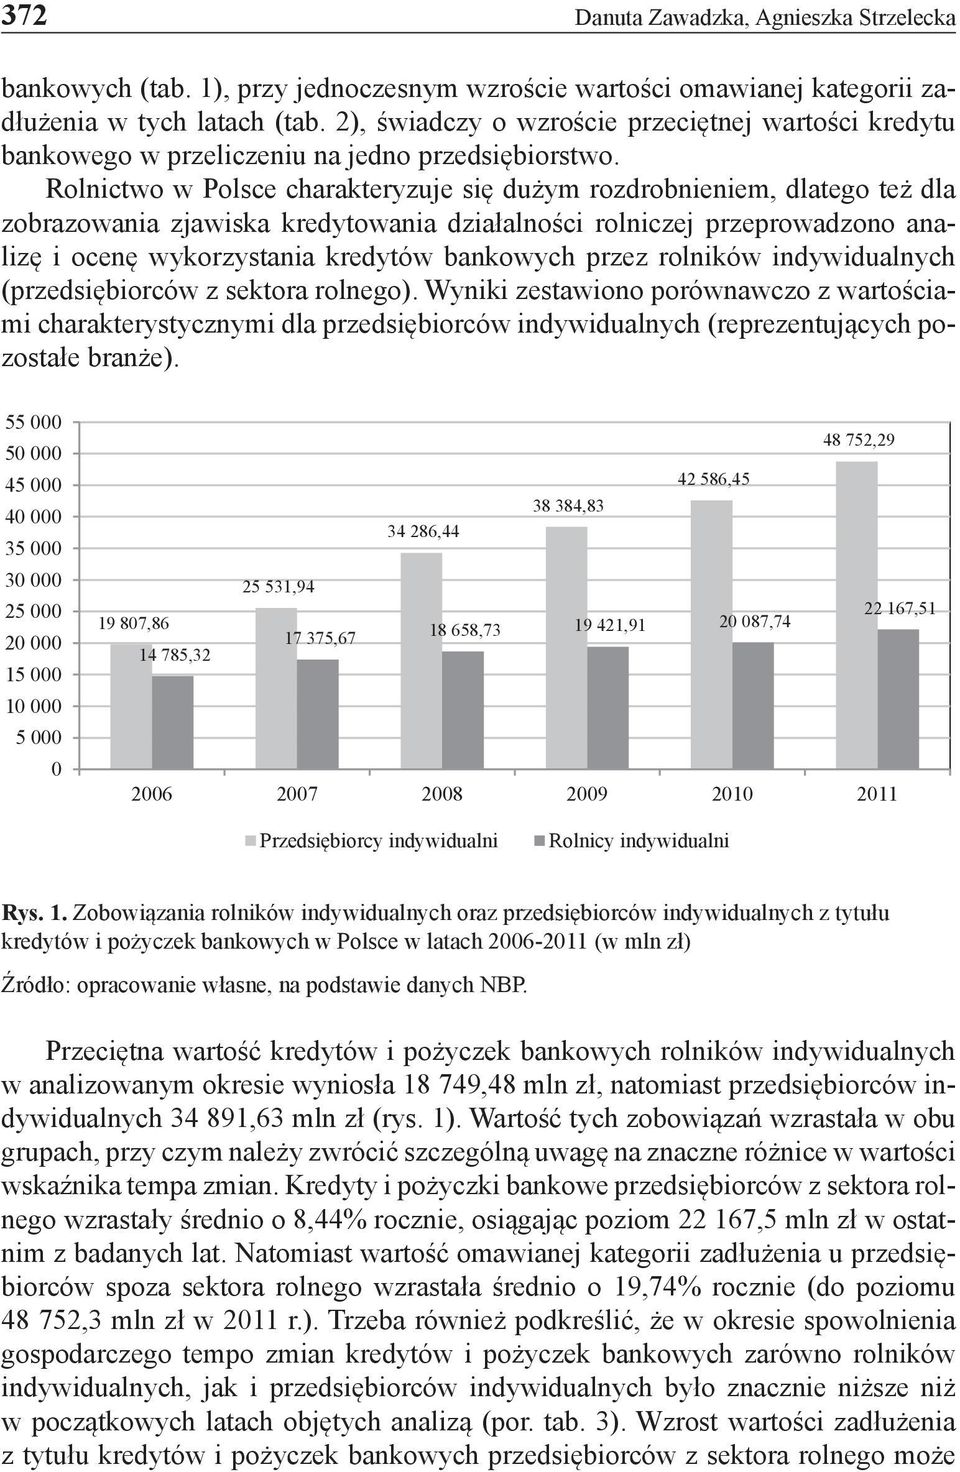 Rolnictwo w Polsce charakteryzuje się dużym rozdrobnieniem, dlatego też dla zobrazowania zjawiska kredytowania działalności rolniczej przeprowadzono analizę i ocenę wykorzystania kredytów bankowych